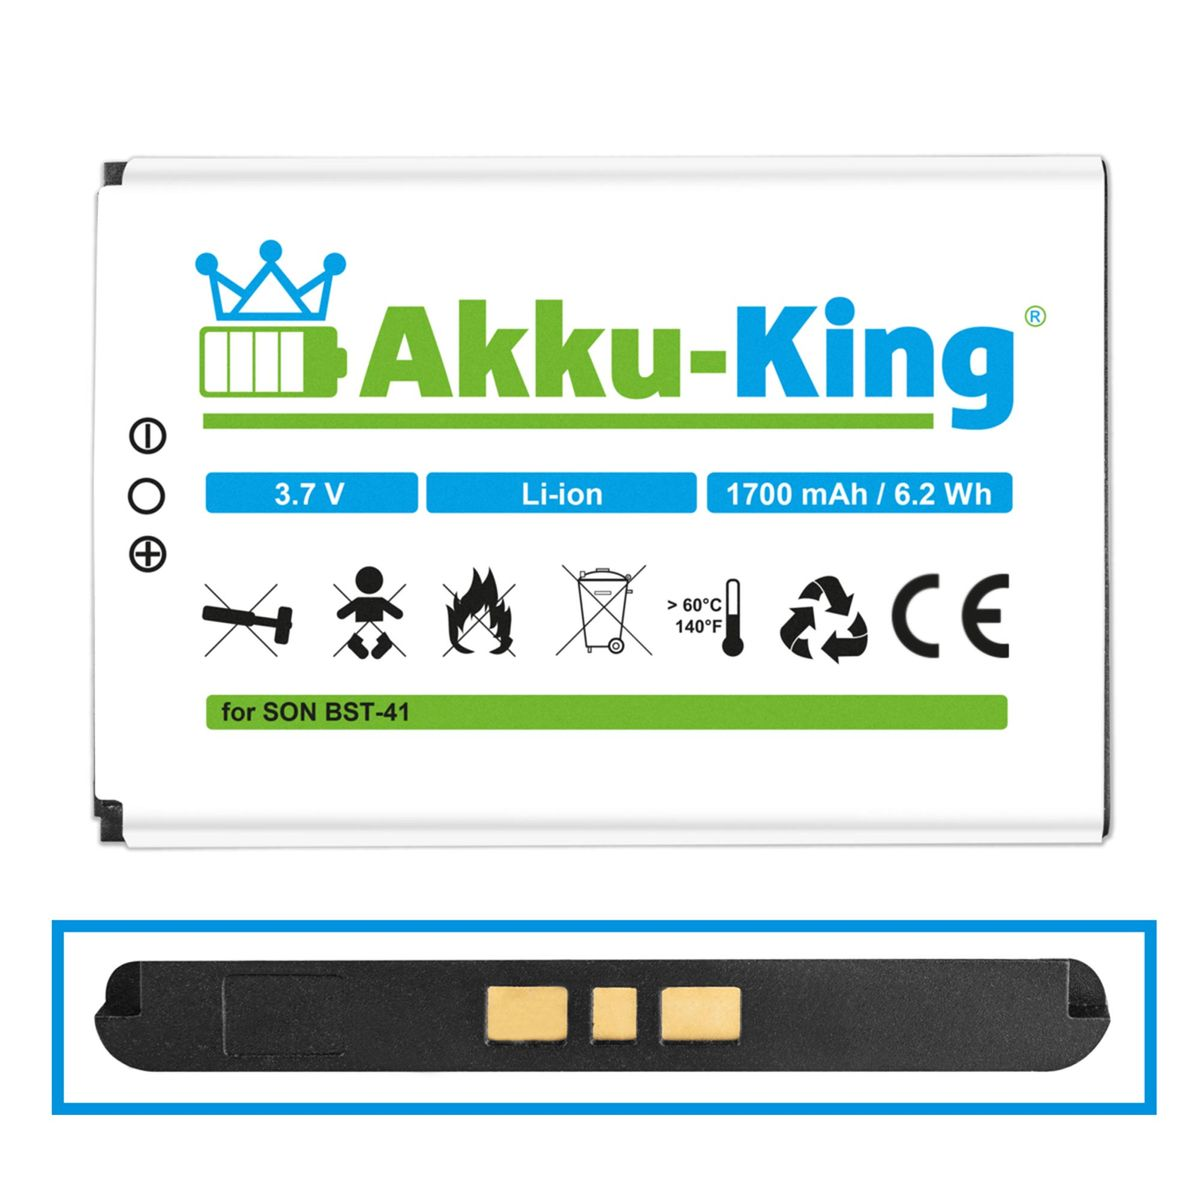 Akku BST-41 Li-Ion 1700mAh Handy-Akku, 3.7 kompatibel Sony-Ericsson mit AKKU-KING Volt,